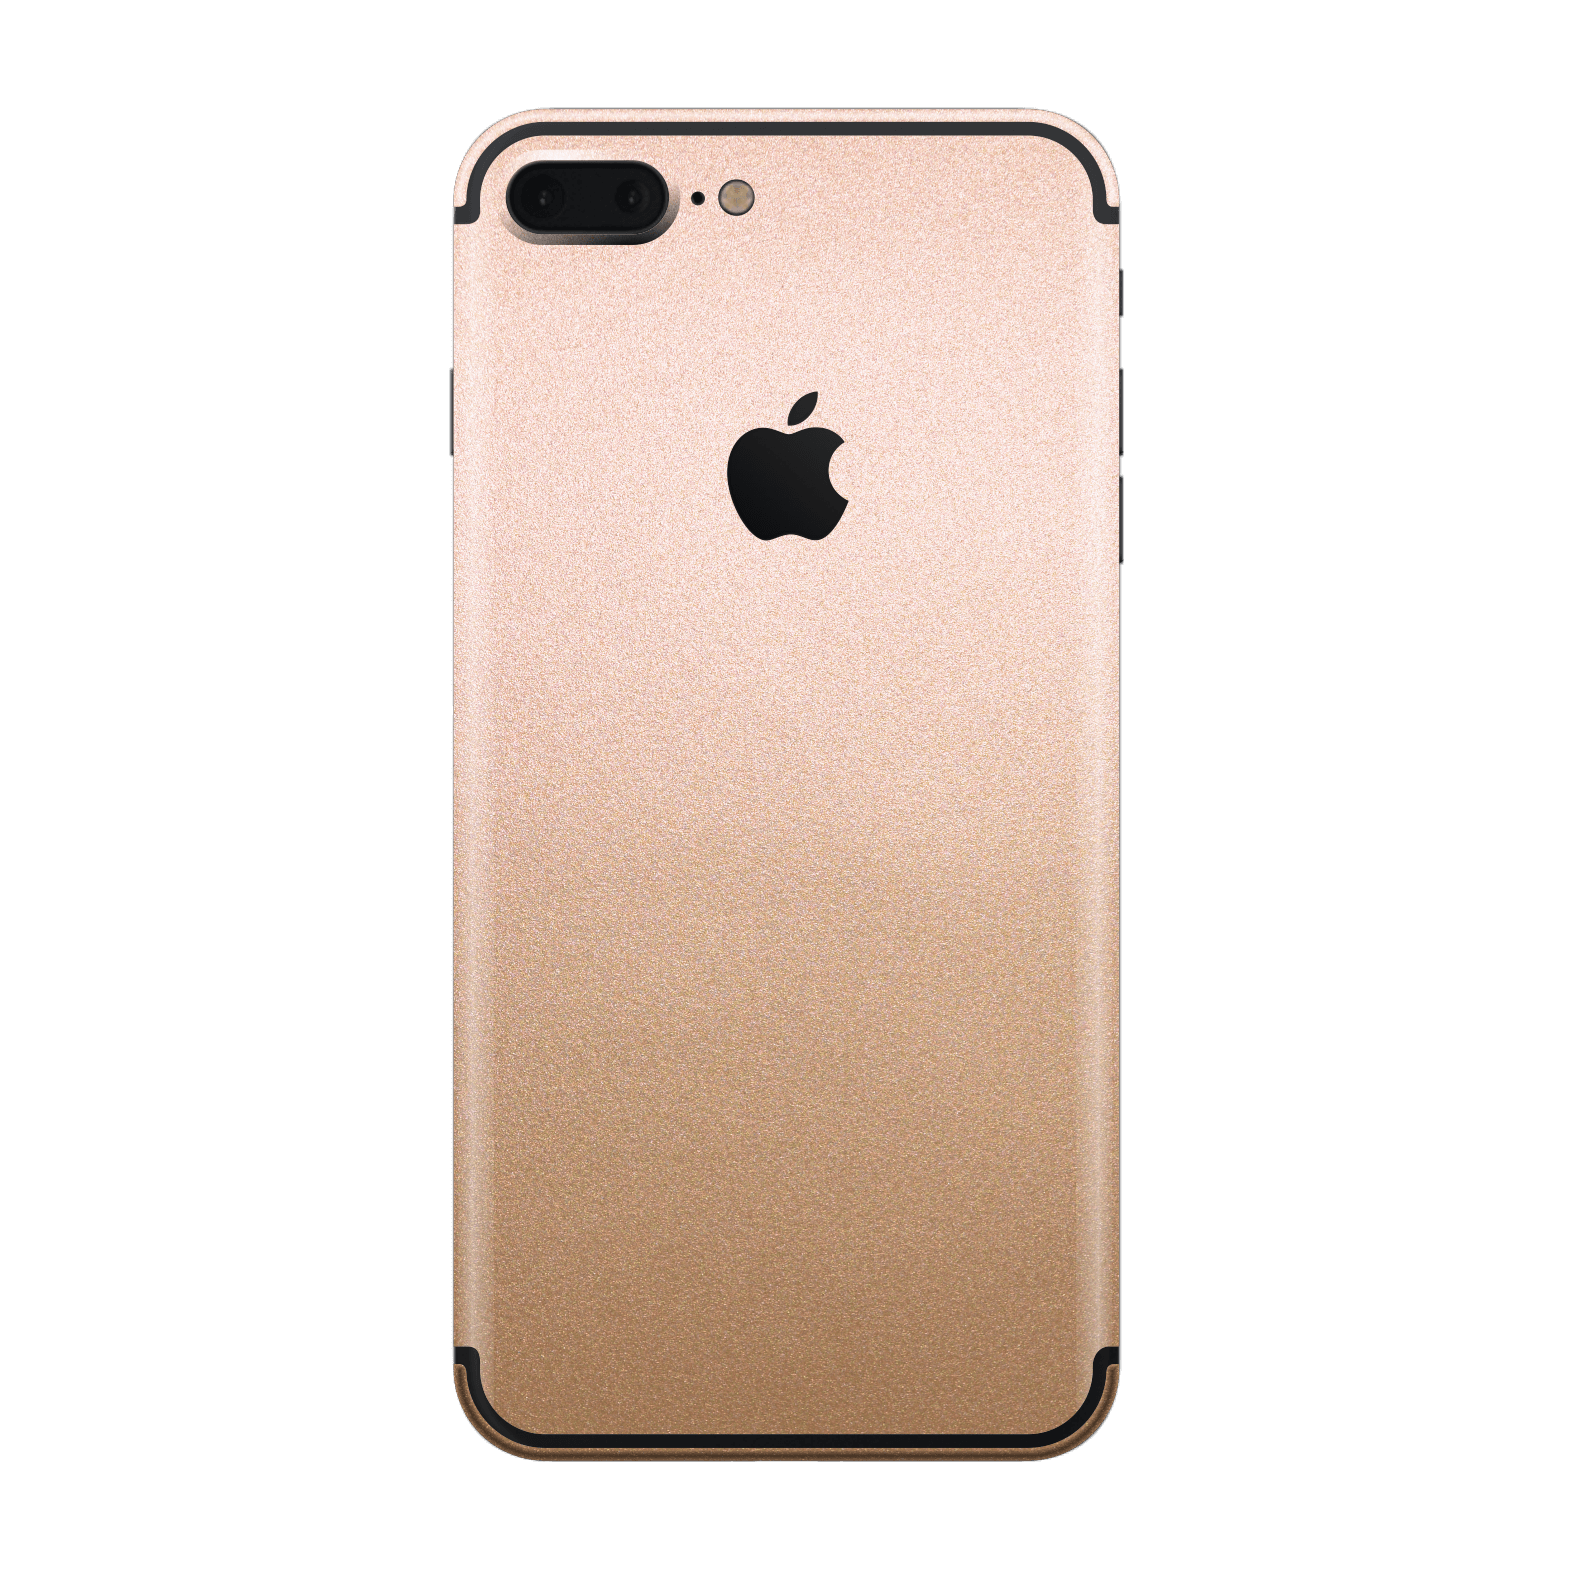 iPhone 7 Plus Luxuria Rose Gold Metallic Skin Wrap Decal Protector | EasySkinz